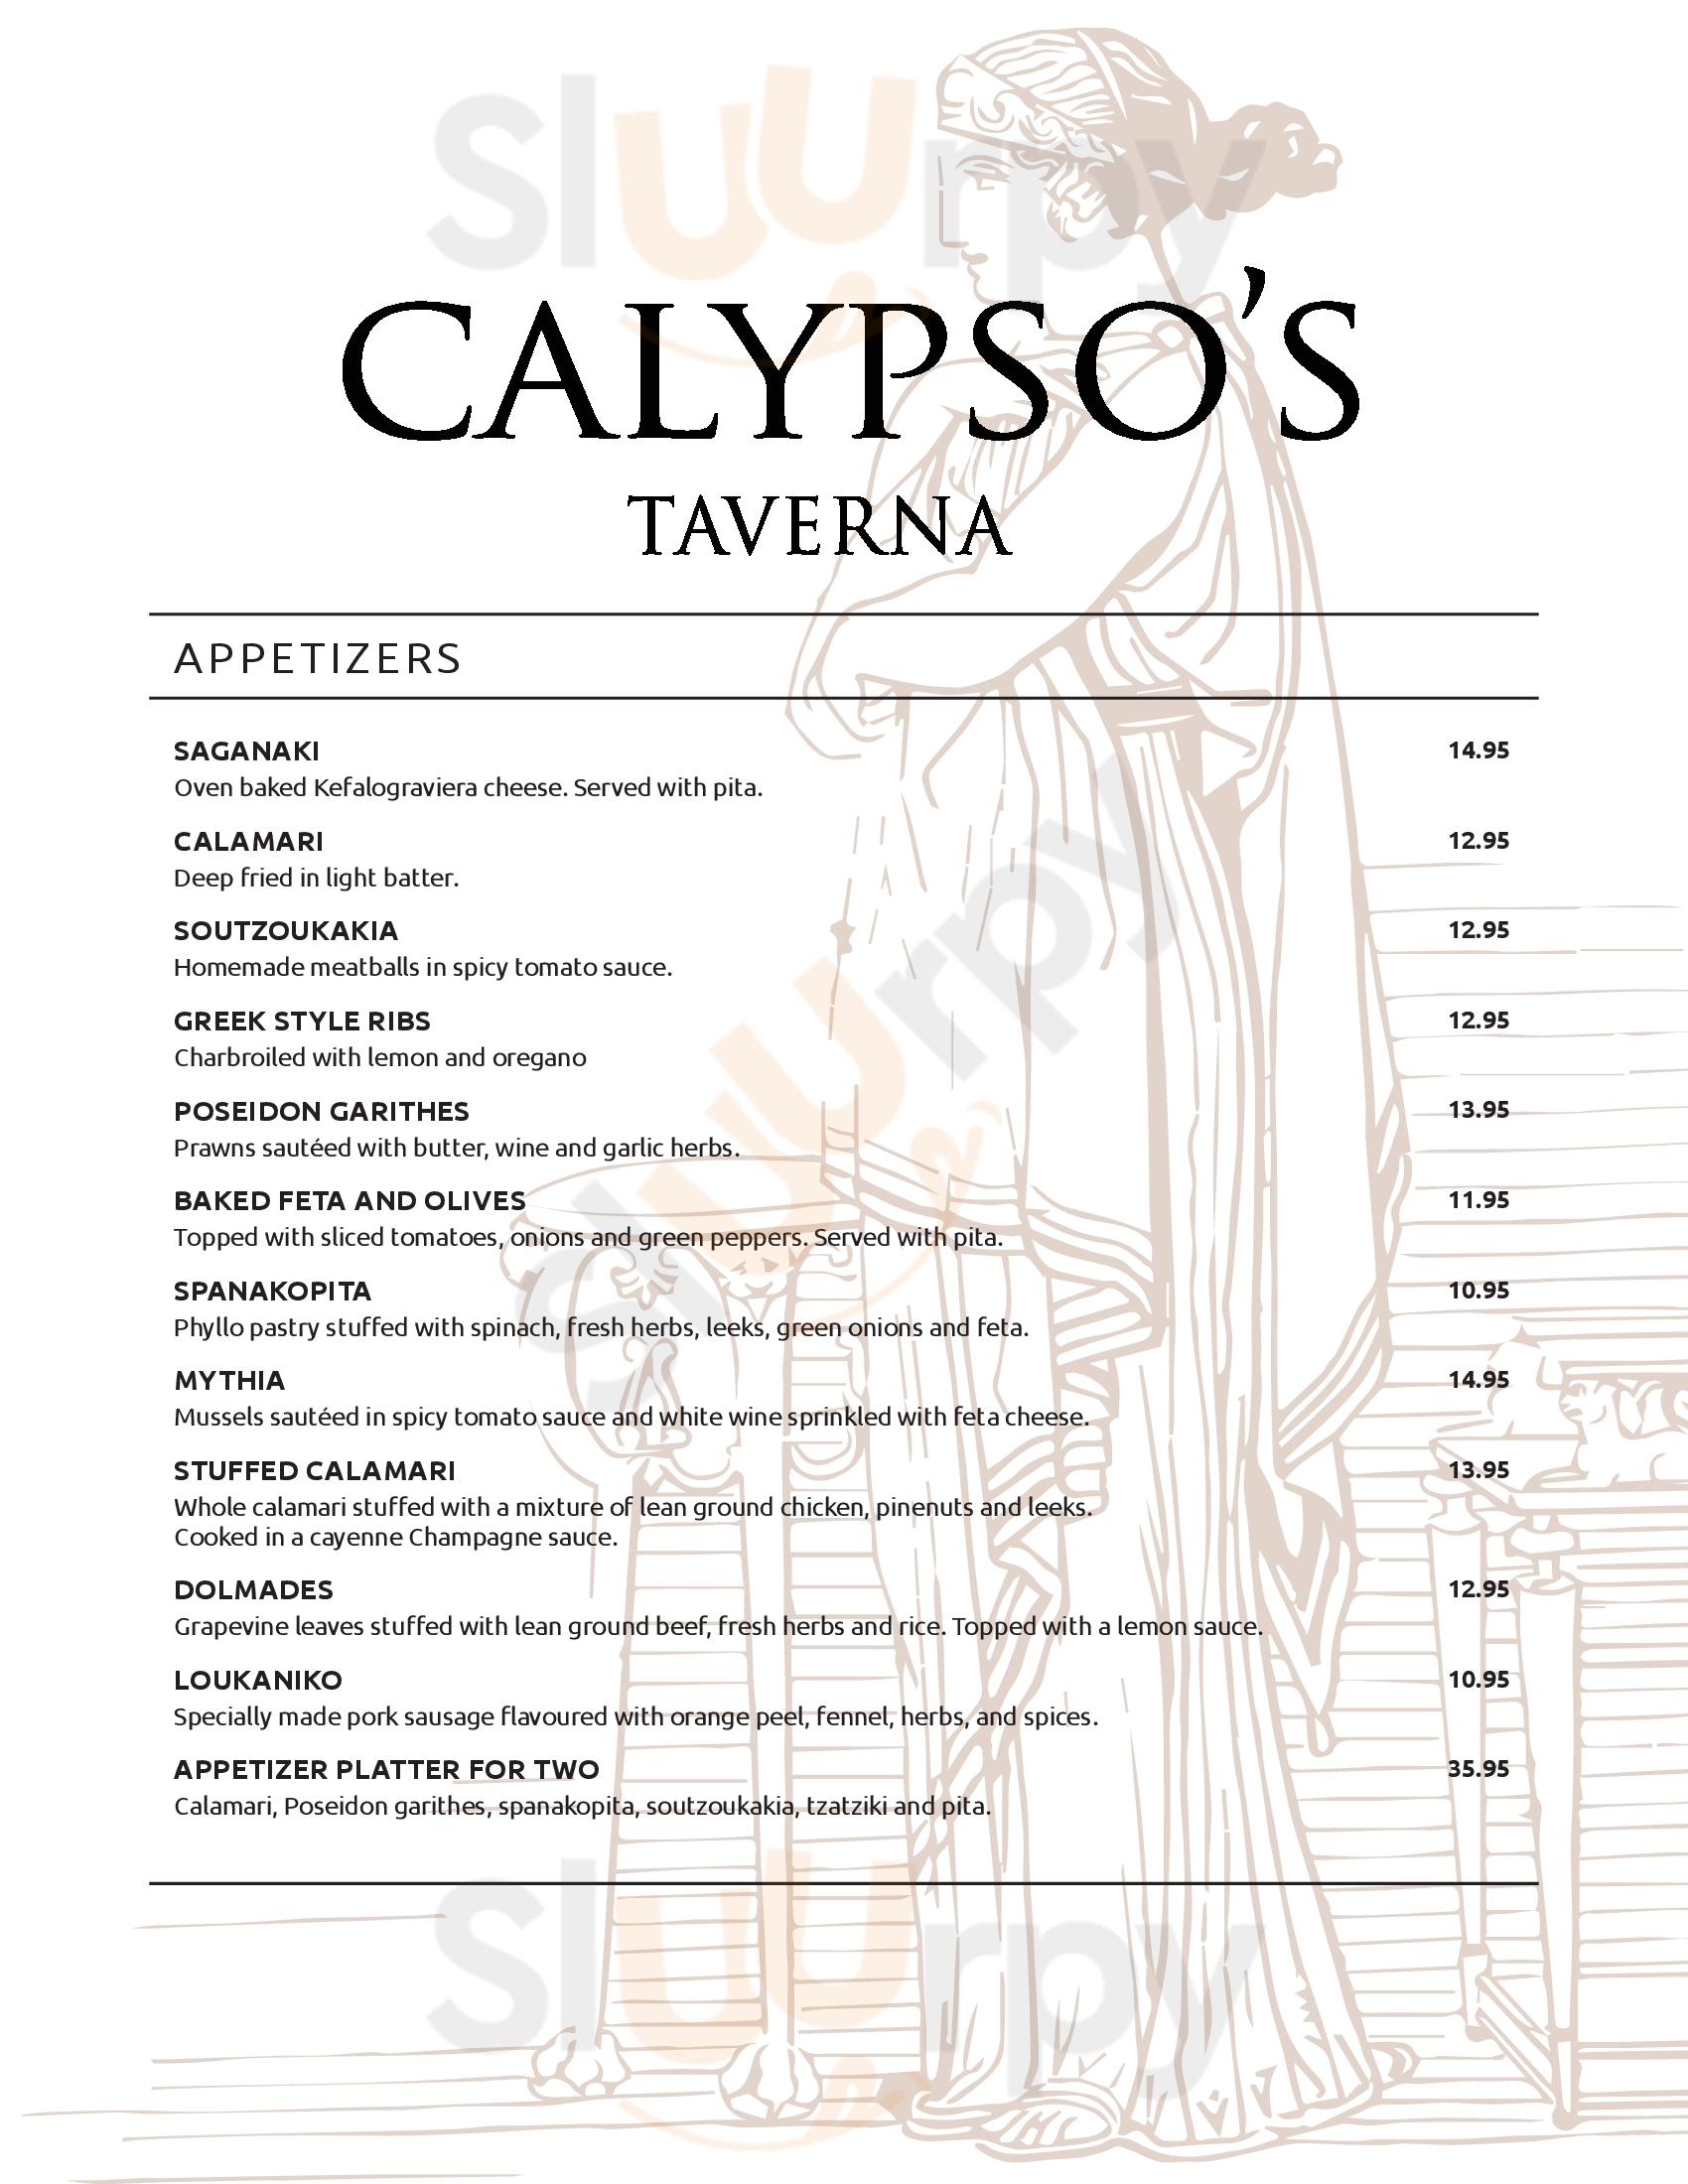 Calypso's Taverna Calgary Menu - 1